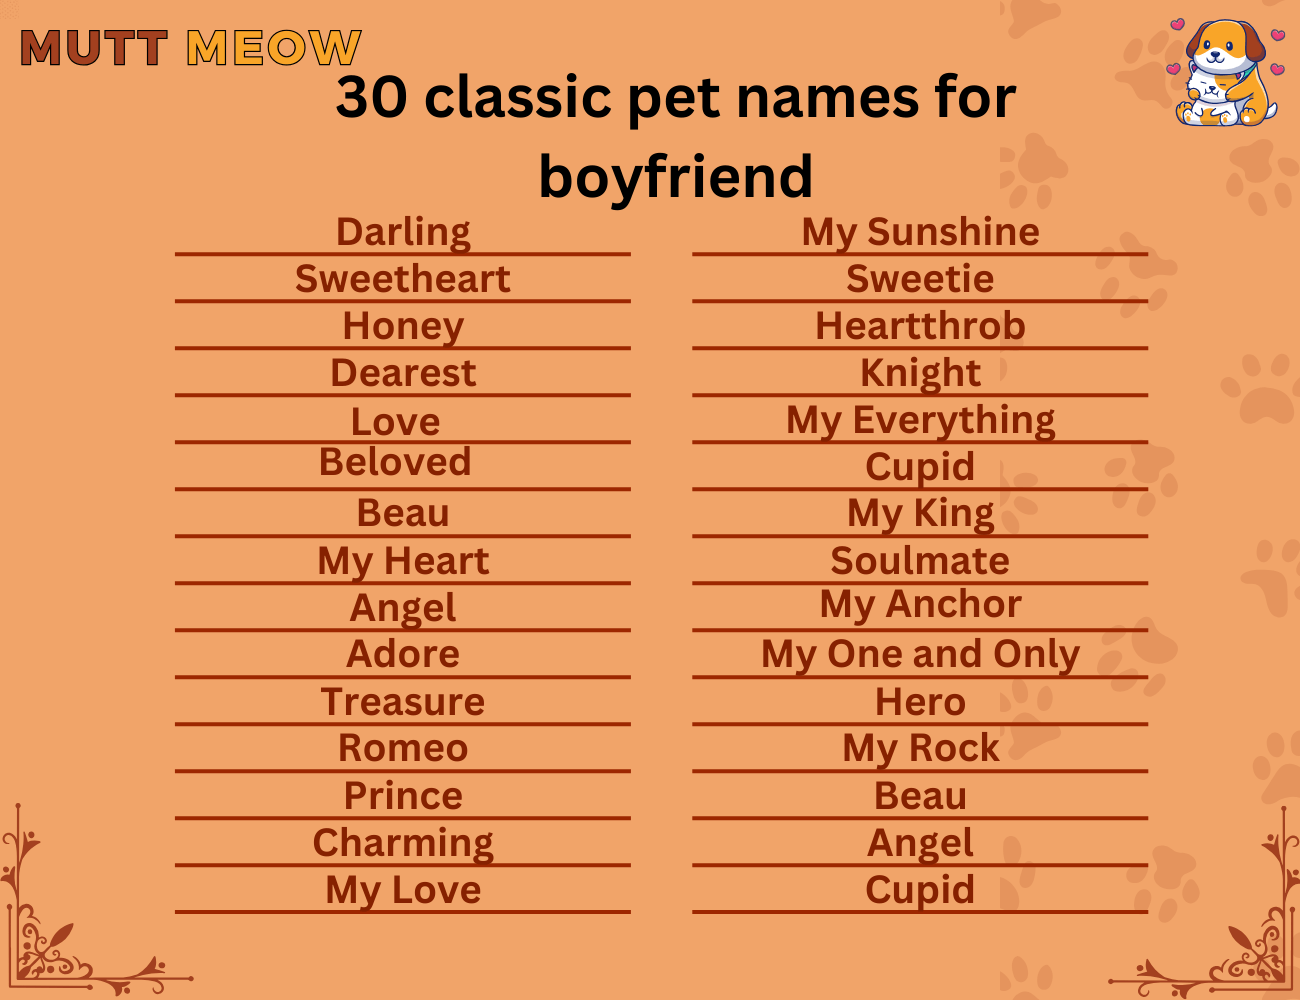 30 classic pet names for boyfriend